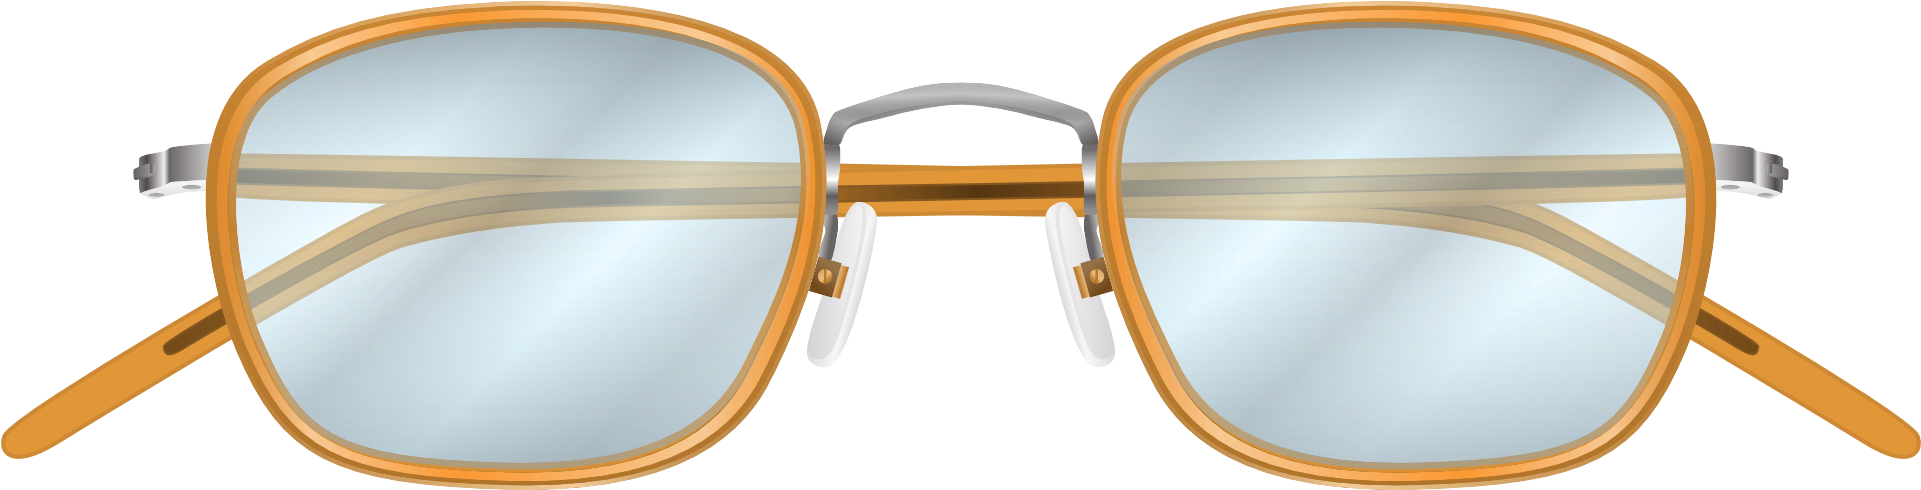 Vintage Round Eyeglasses Transparent Background PNG